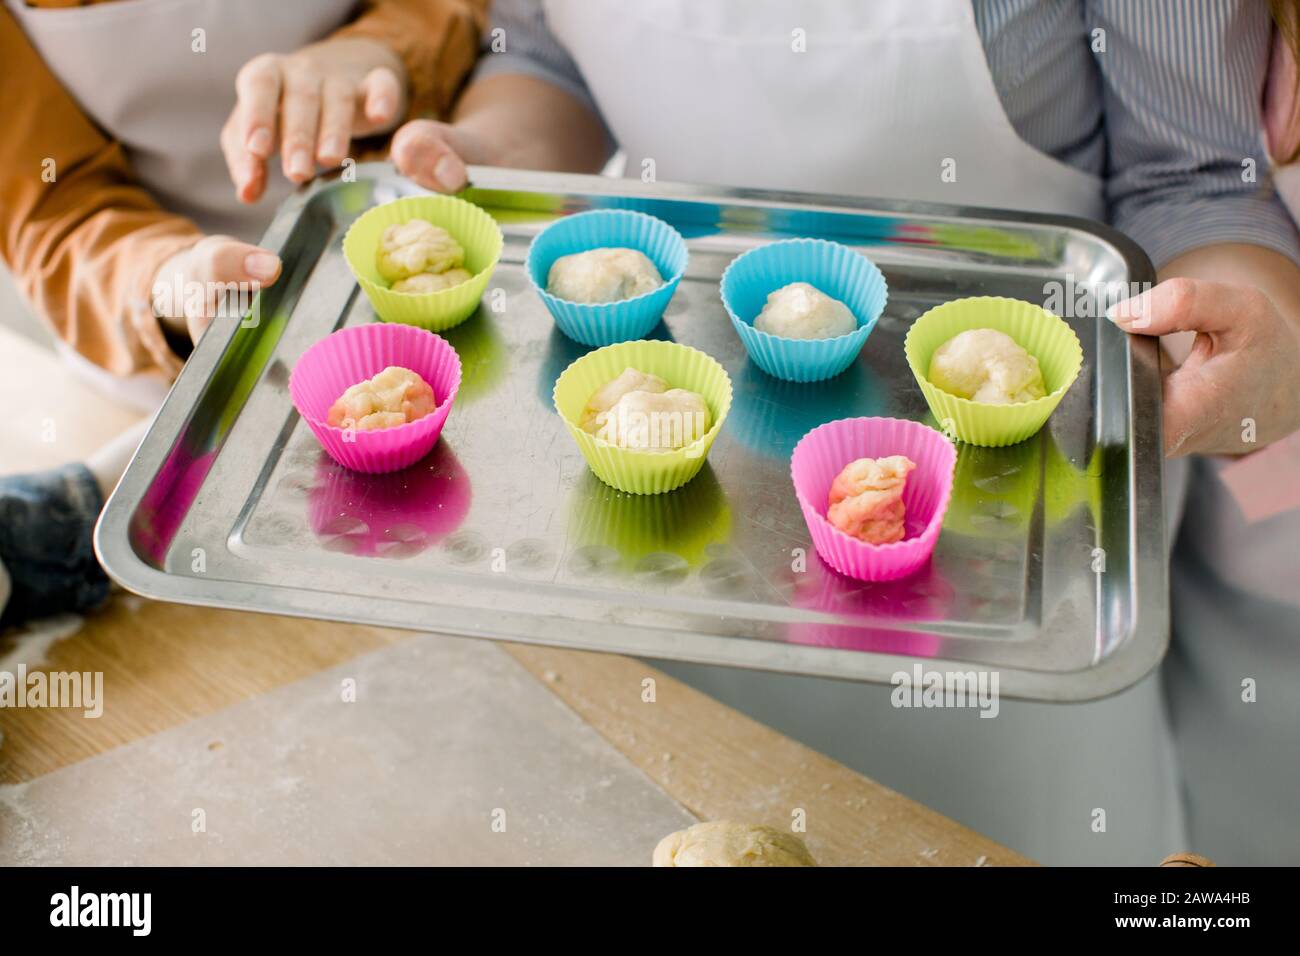 Vorbereiten von Muffins zum Backen. Teig in silikonfarbige Tassen aufgeteilt, die auf einem Backblech aus Metall Liegen. Nahaufnahme der Hände von Frauen, die Muffin-Backtra halten Stockfoto